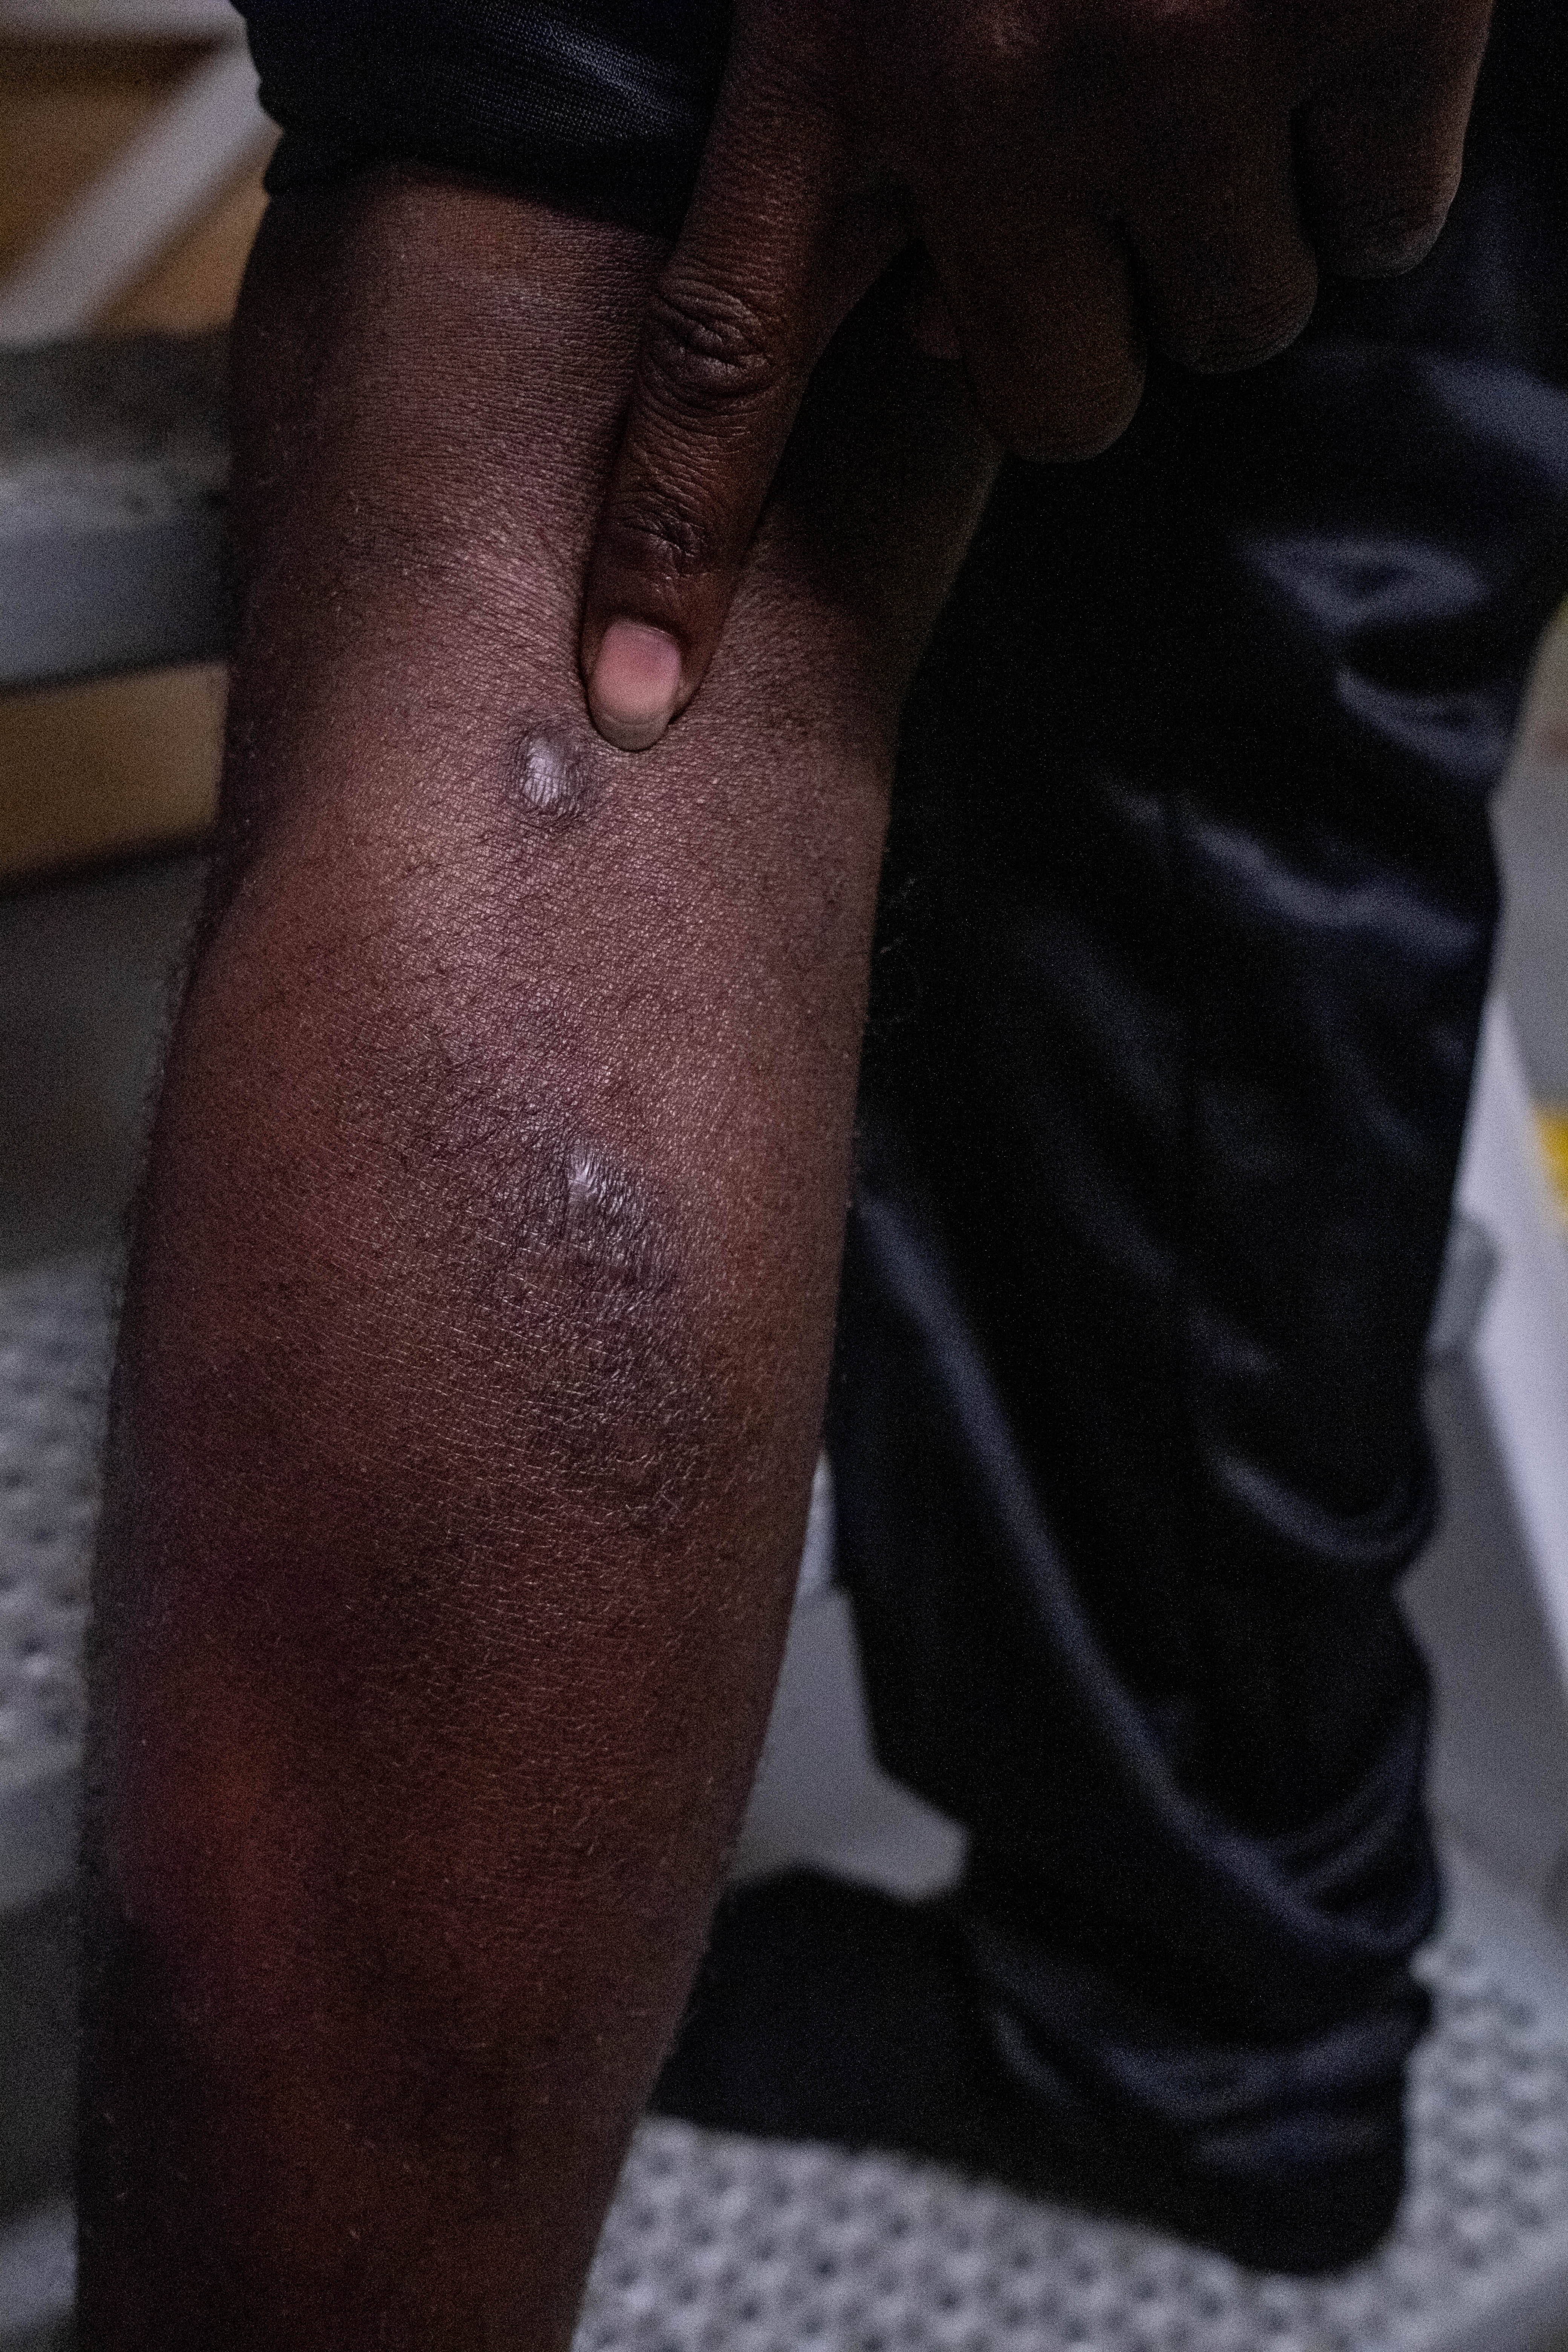 Haidar muestra las cicatrices de las heridas infringidas en un centro de detención en Libia donde sufrió tortura y violencia, incluida la paliza con un objeto metálico. © Nyancho NwaNri ​